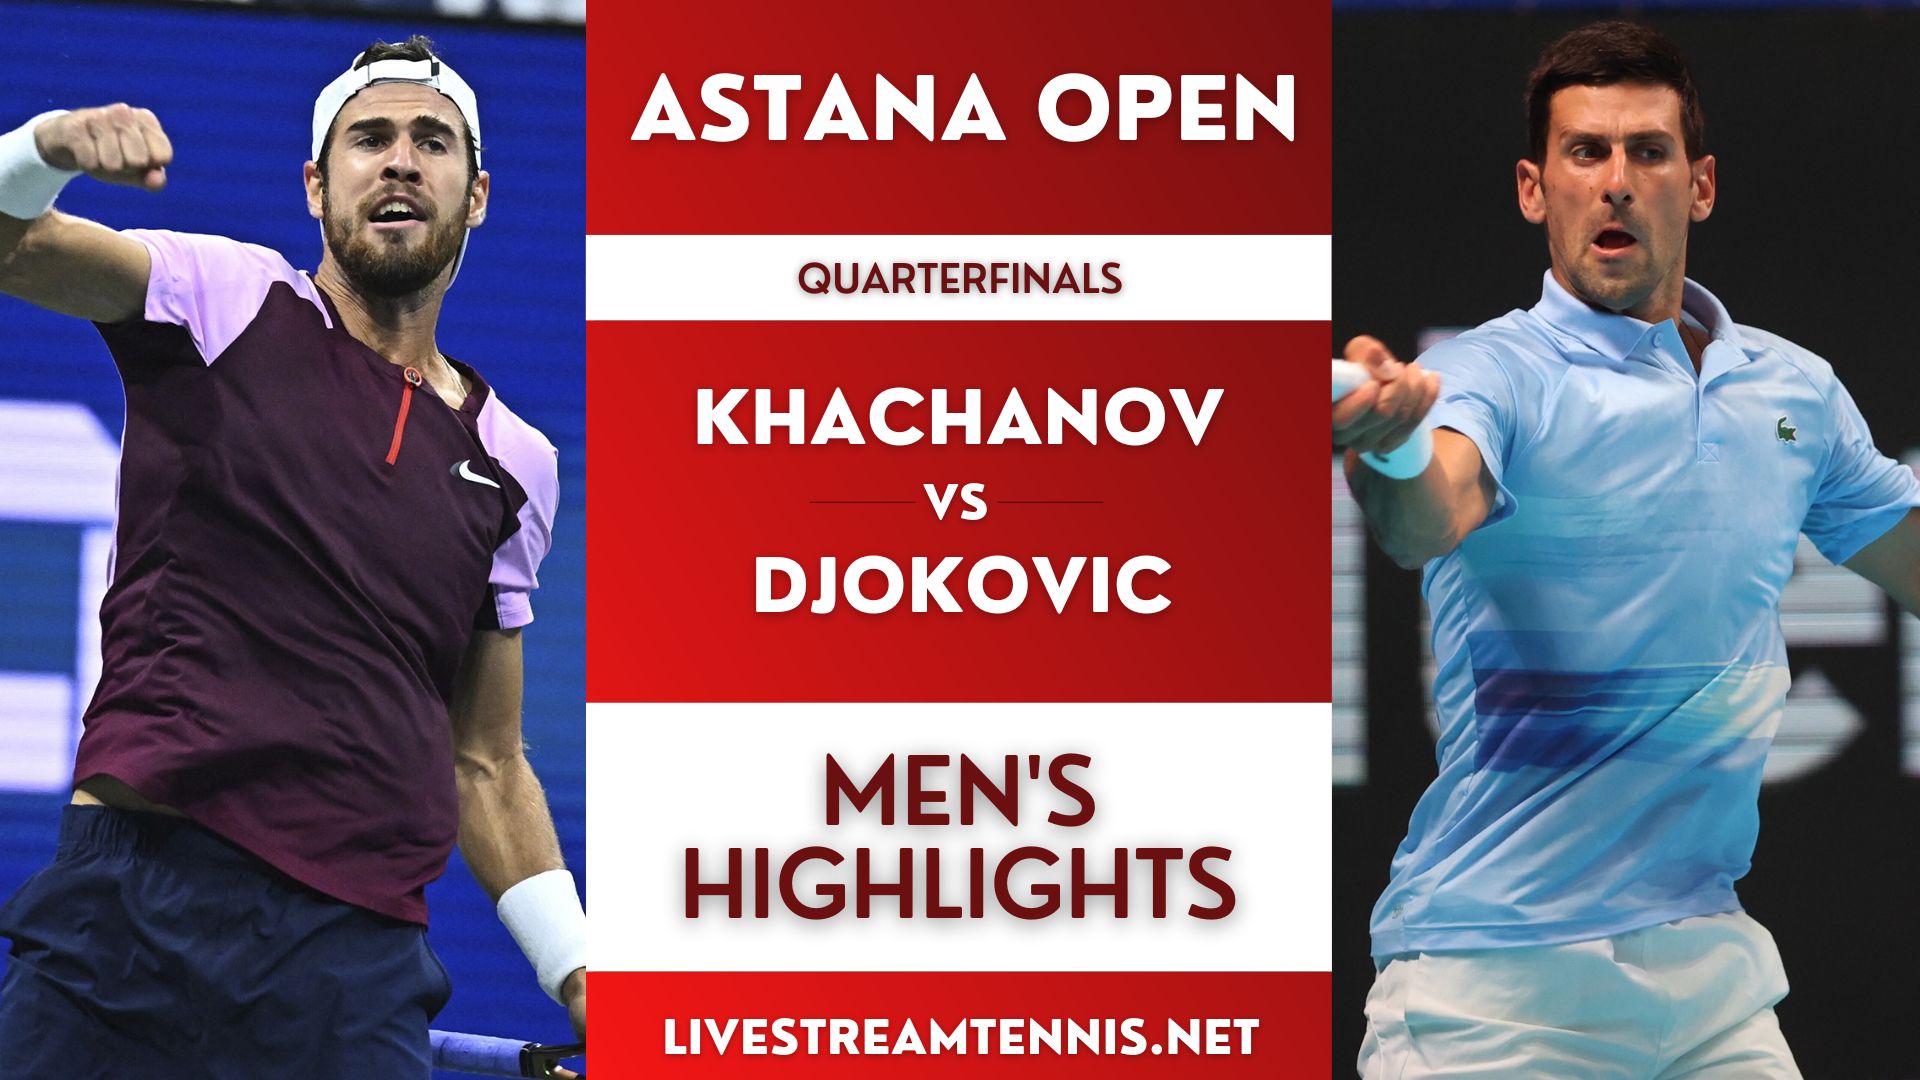 Astana Open ATP Quarterfinal 2 Highlights 2022